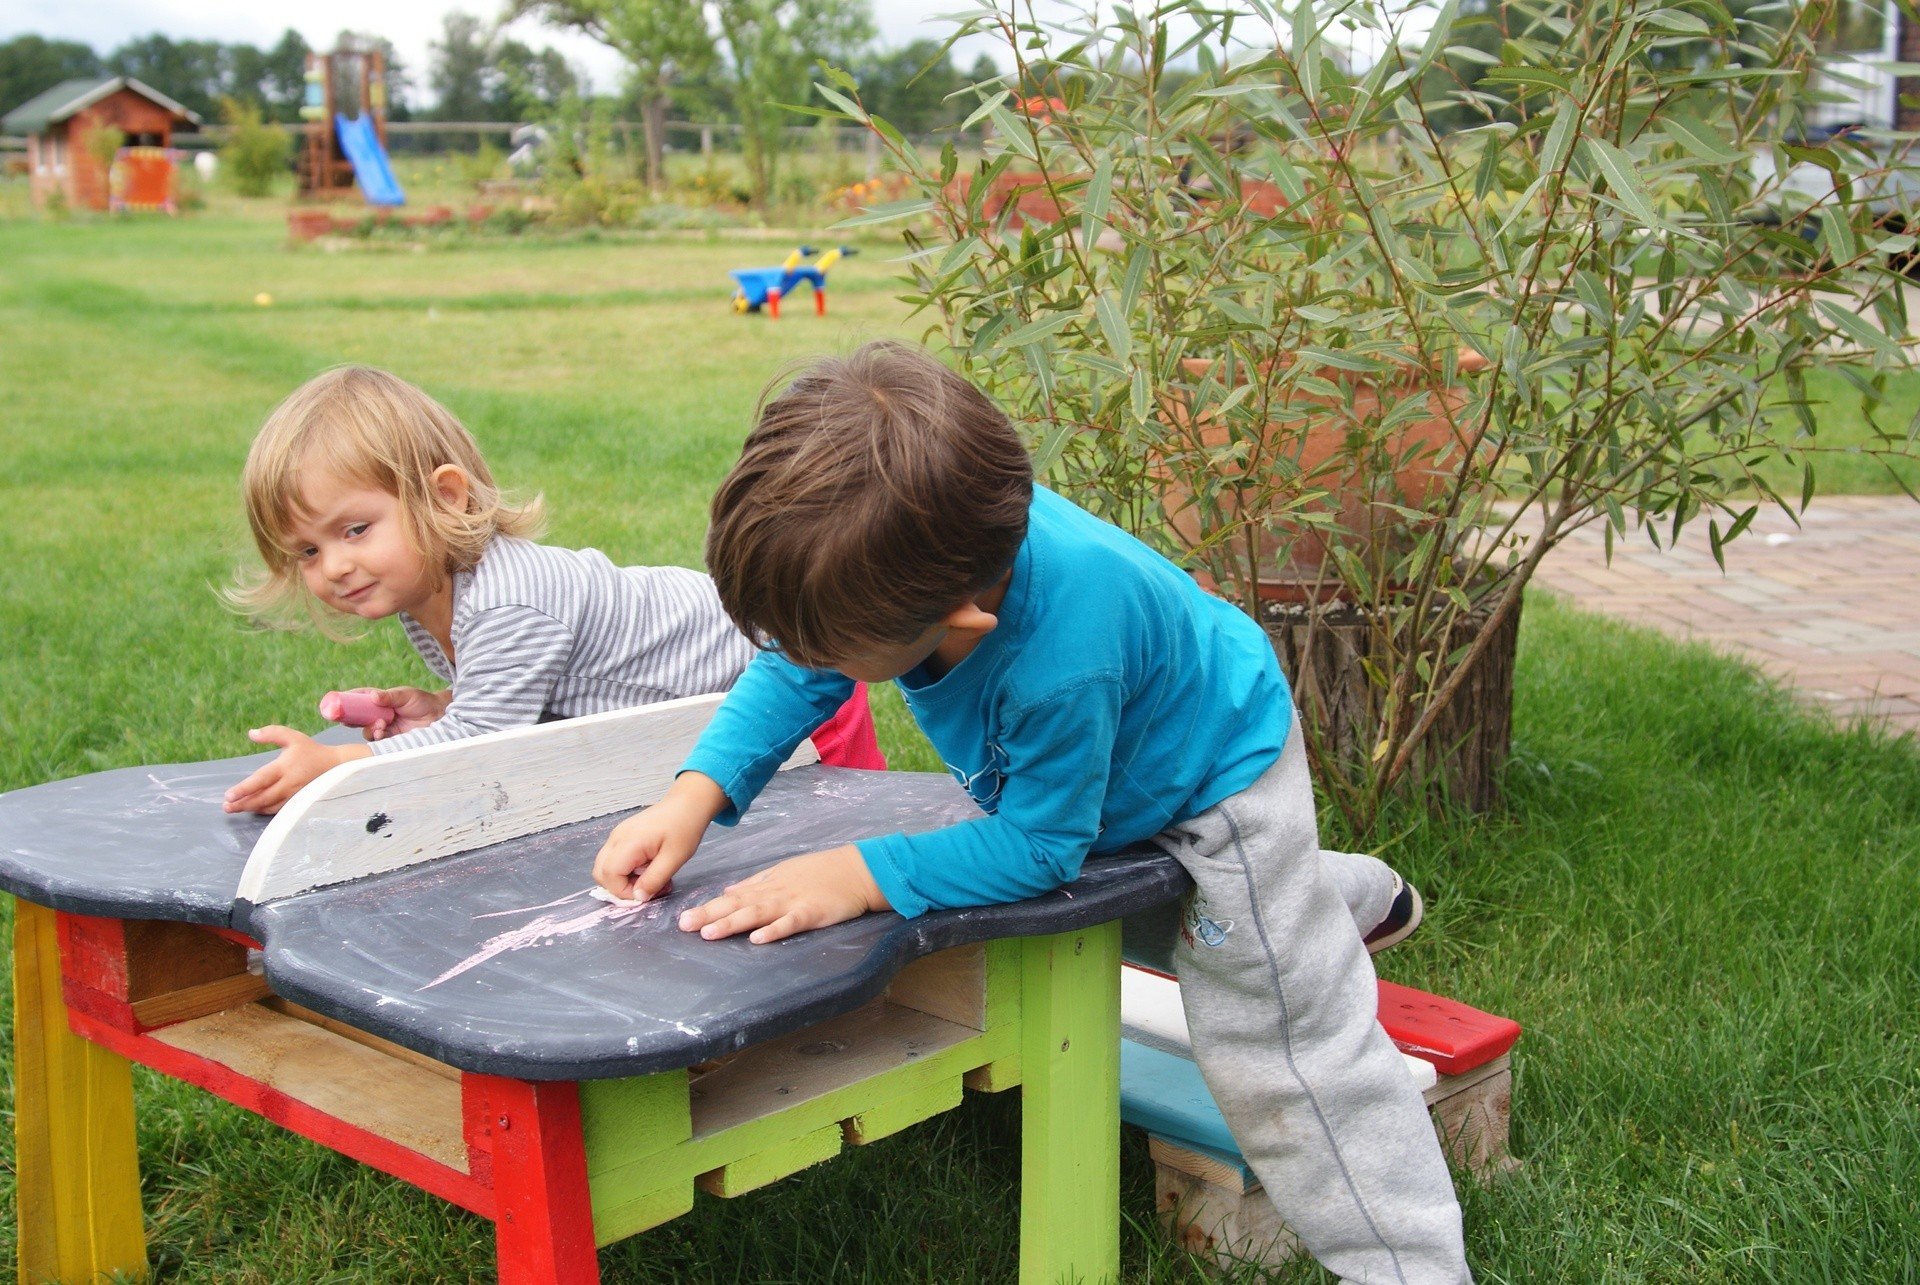 Meble dla dzieci wykonane z palet: stolik tablicowy i ławeczka | RegioDom